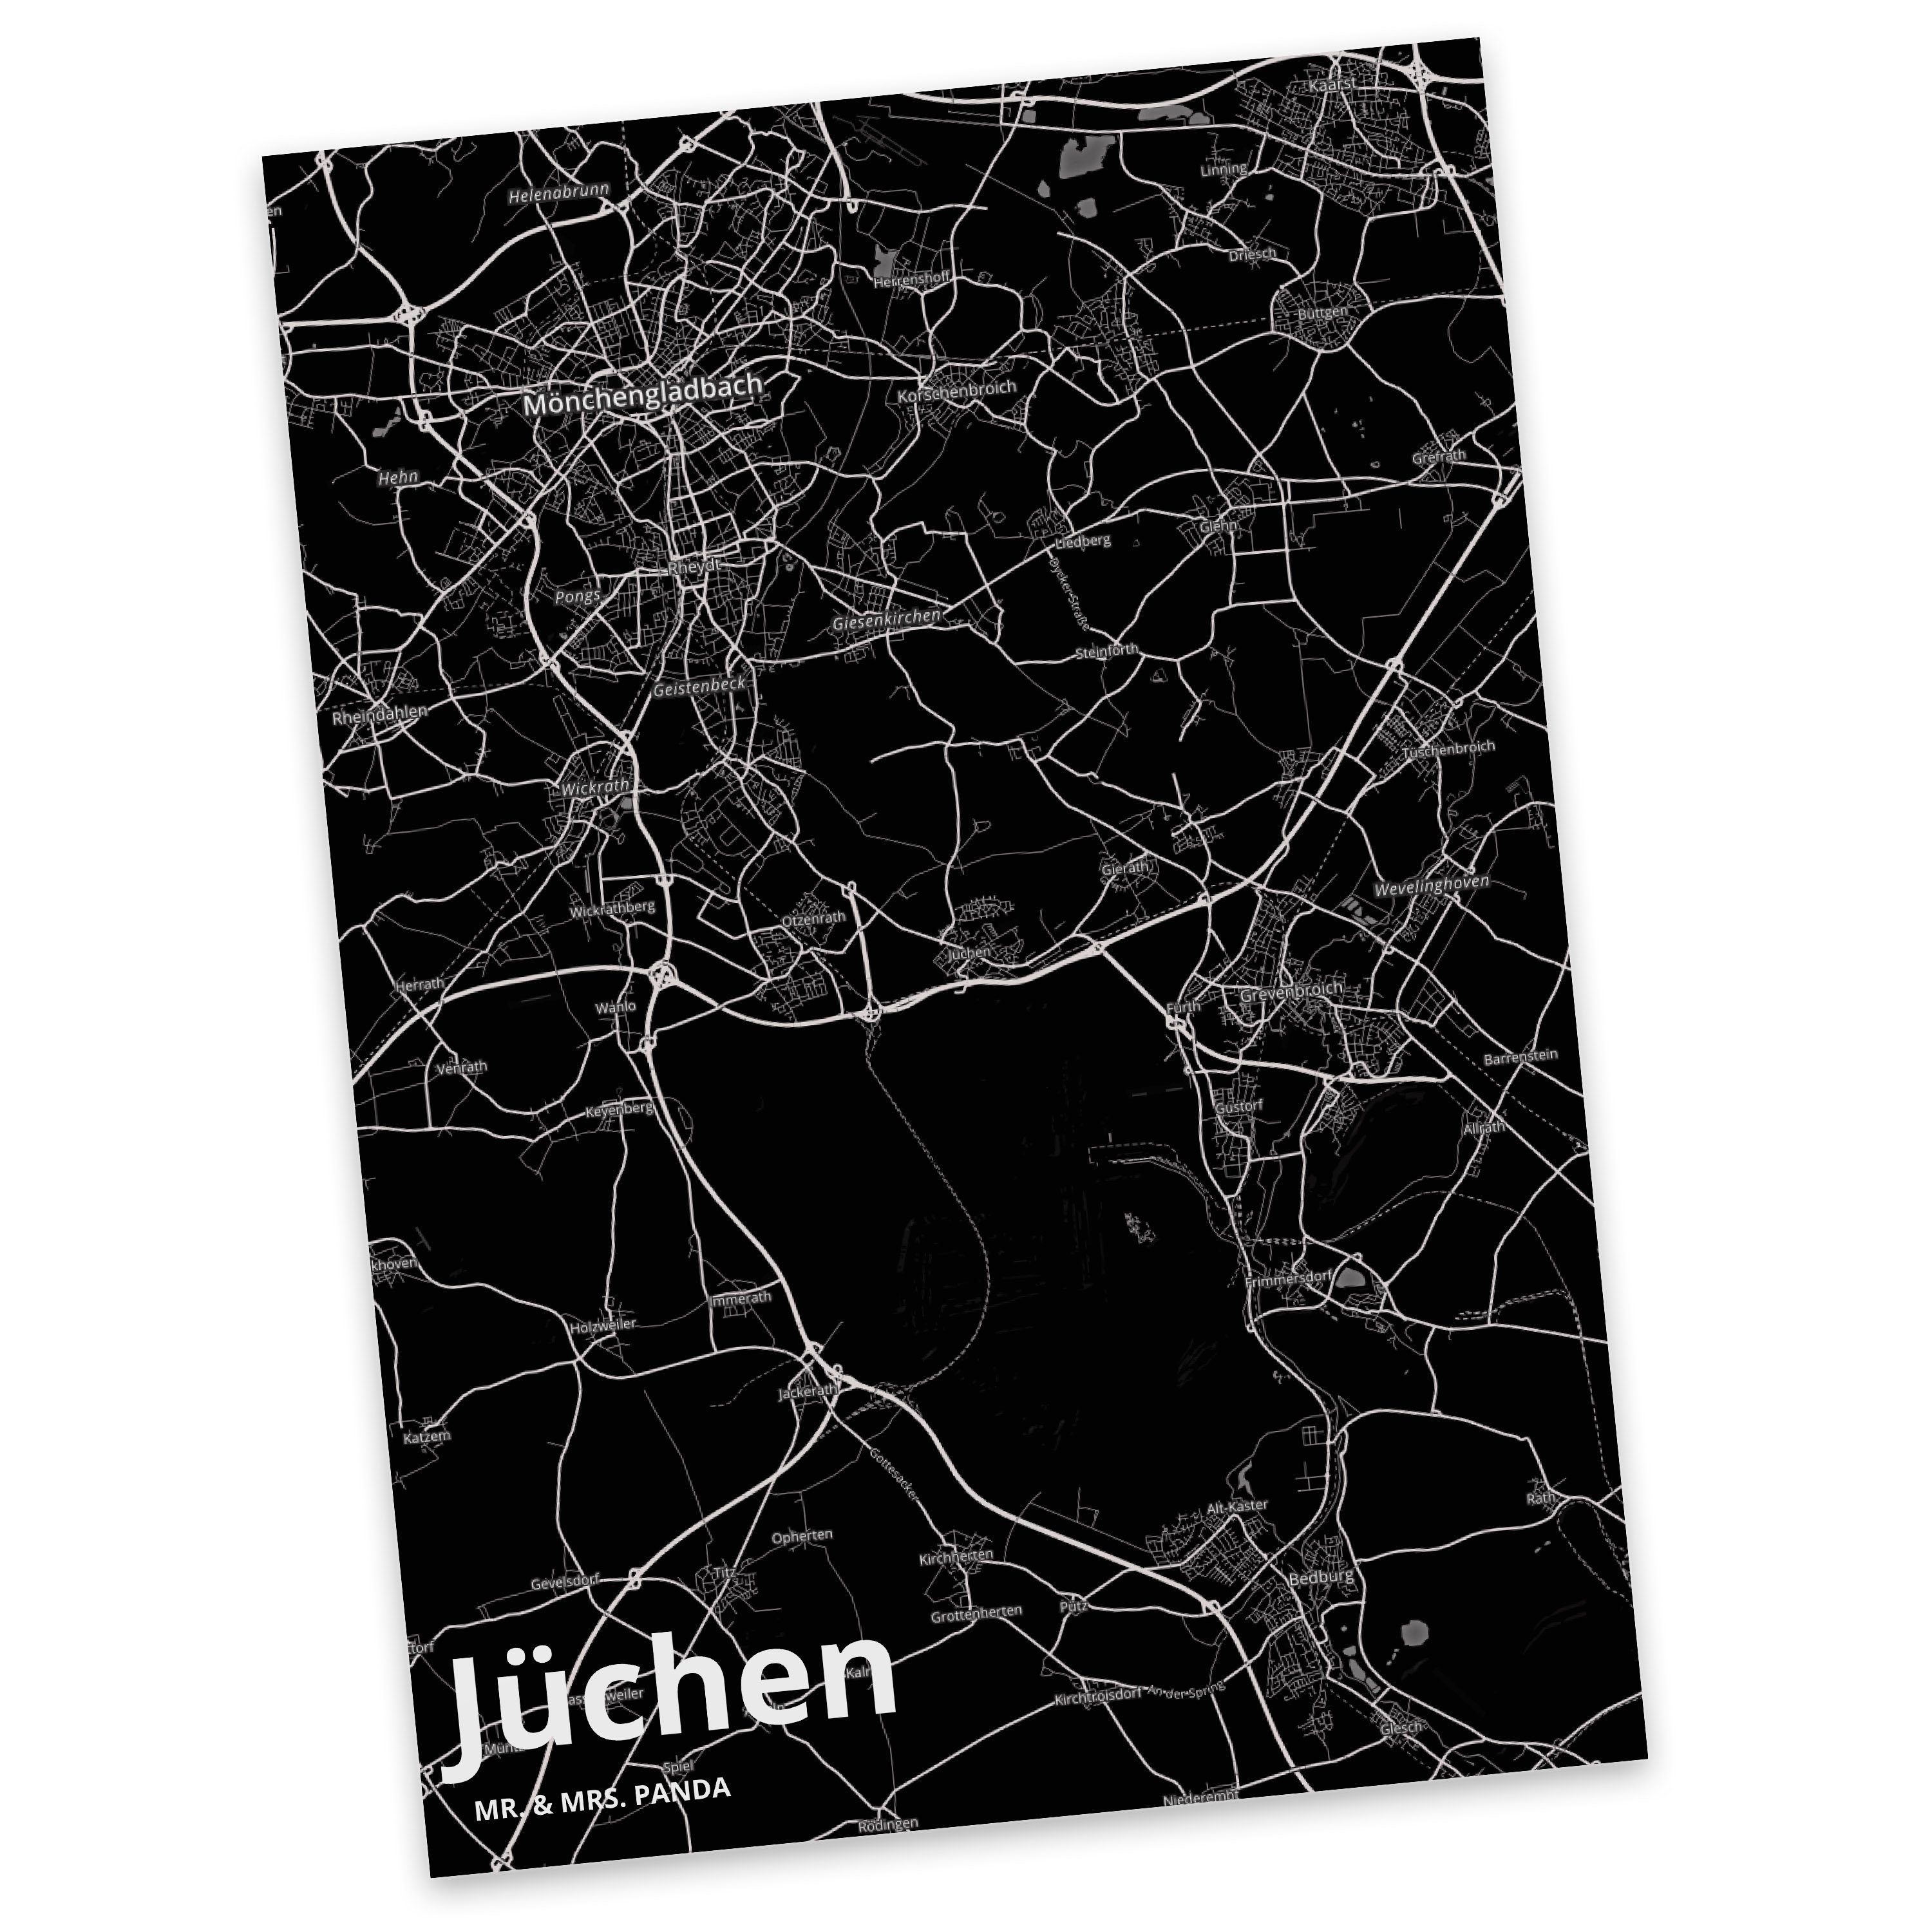 Mr. & Mrs. Panda Postkarte Jüchen - Geschenk, Stadt Dorf Karte Landkarte Map Stadtplan, Geschenk